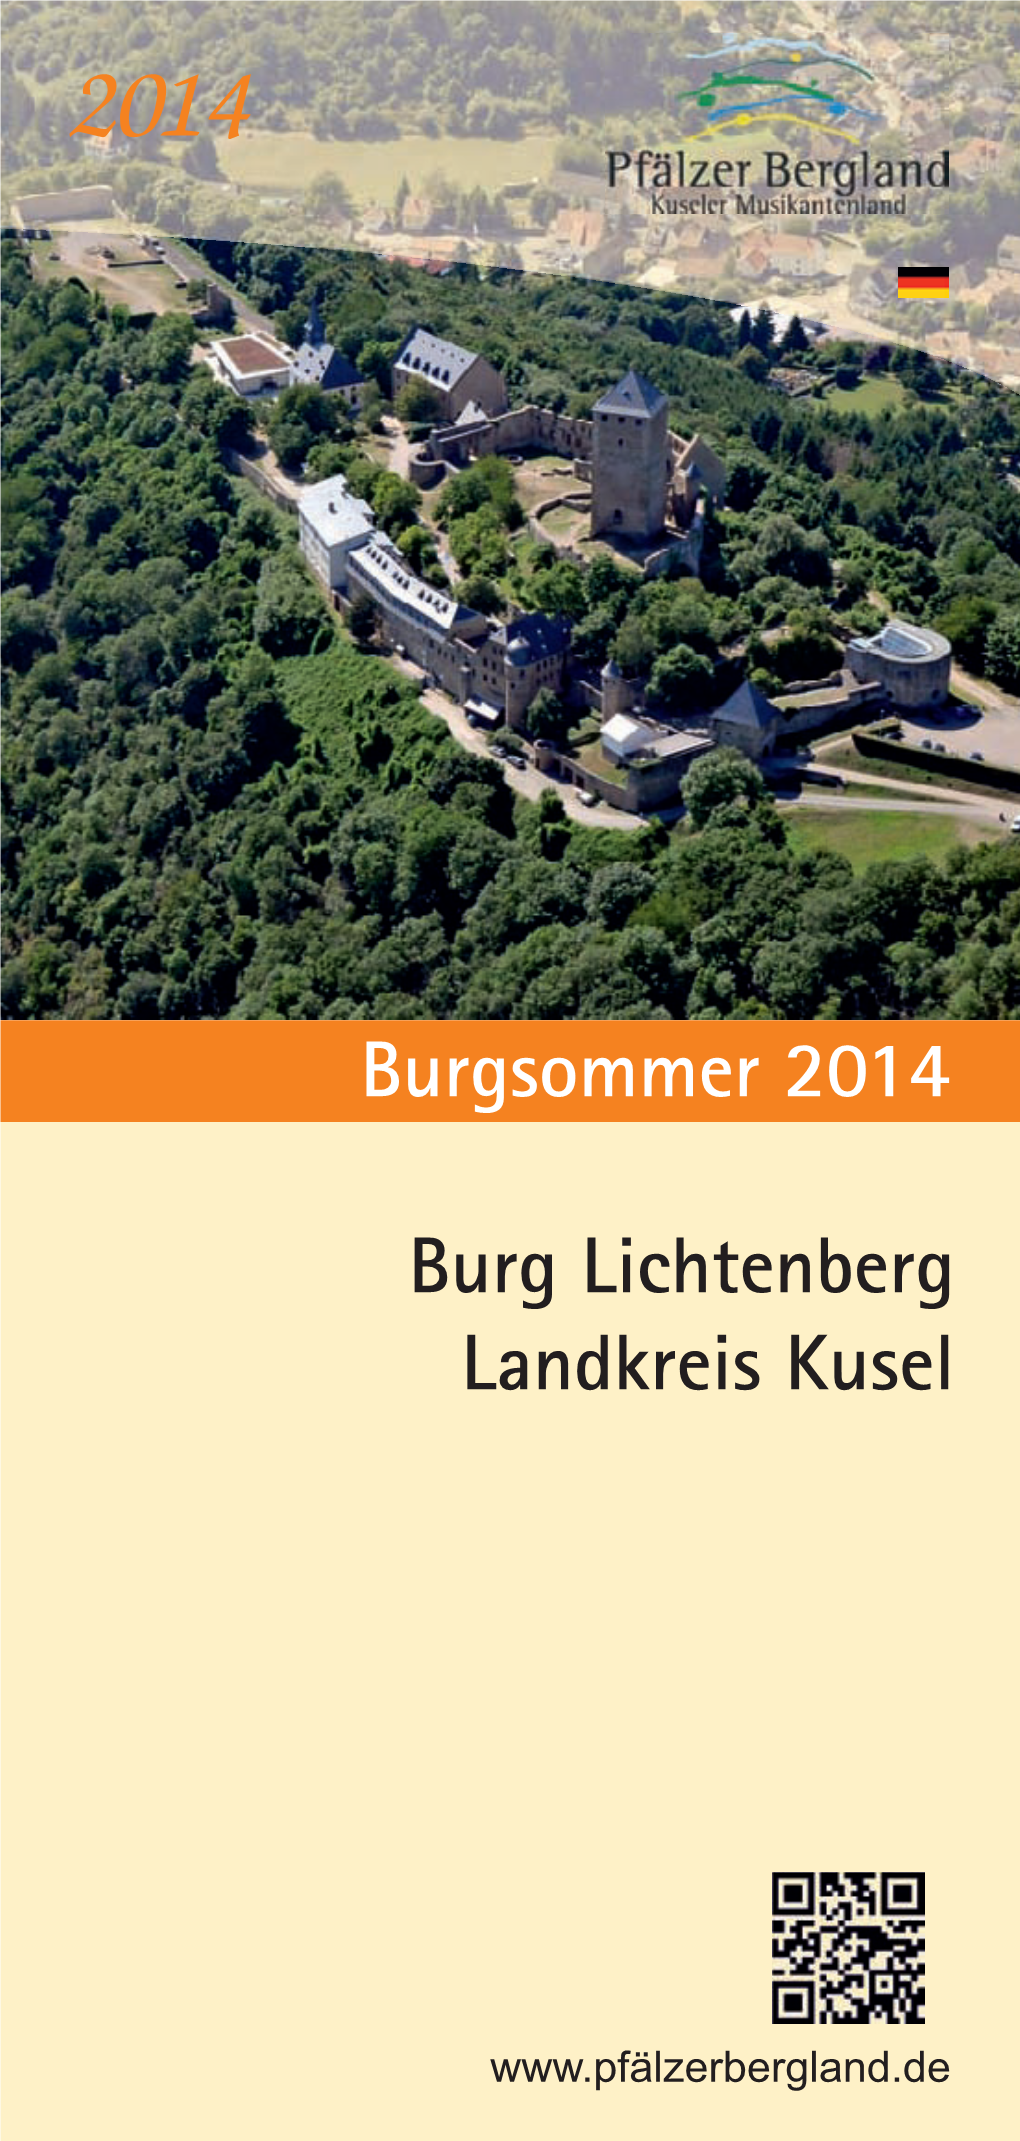 Burgsommer 2014 Burg Lichtenberg Landkreis Kusel